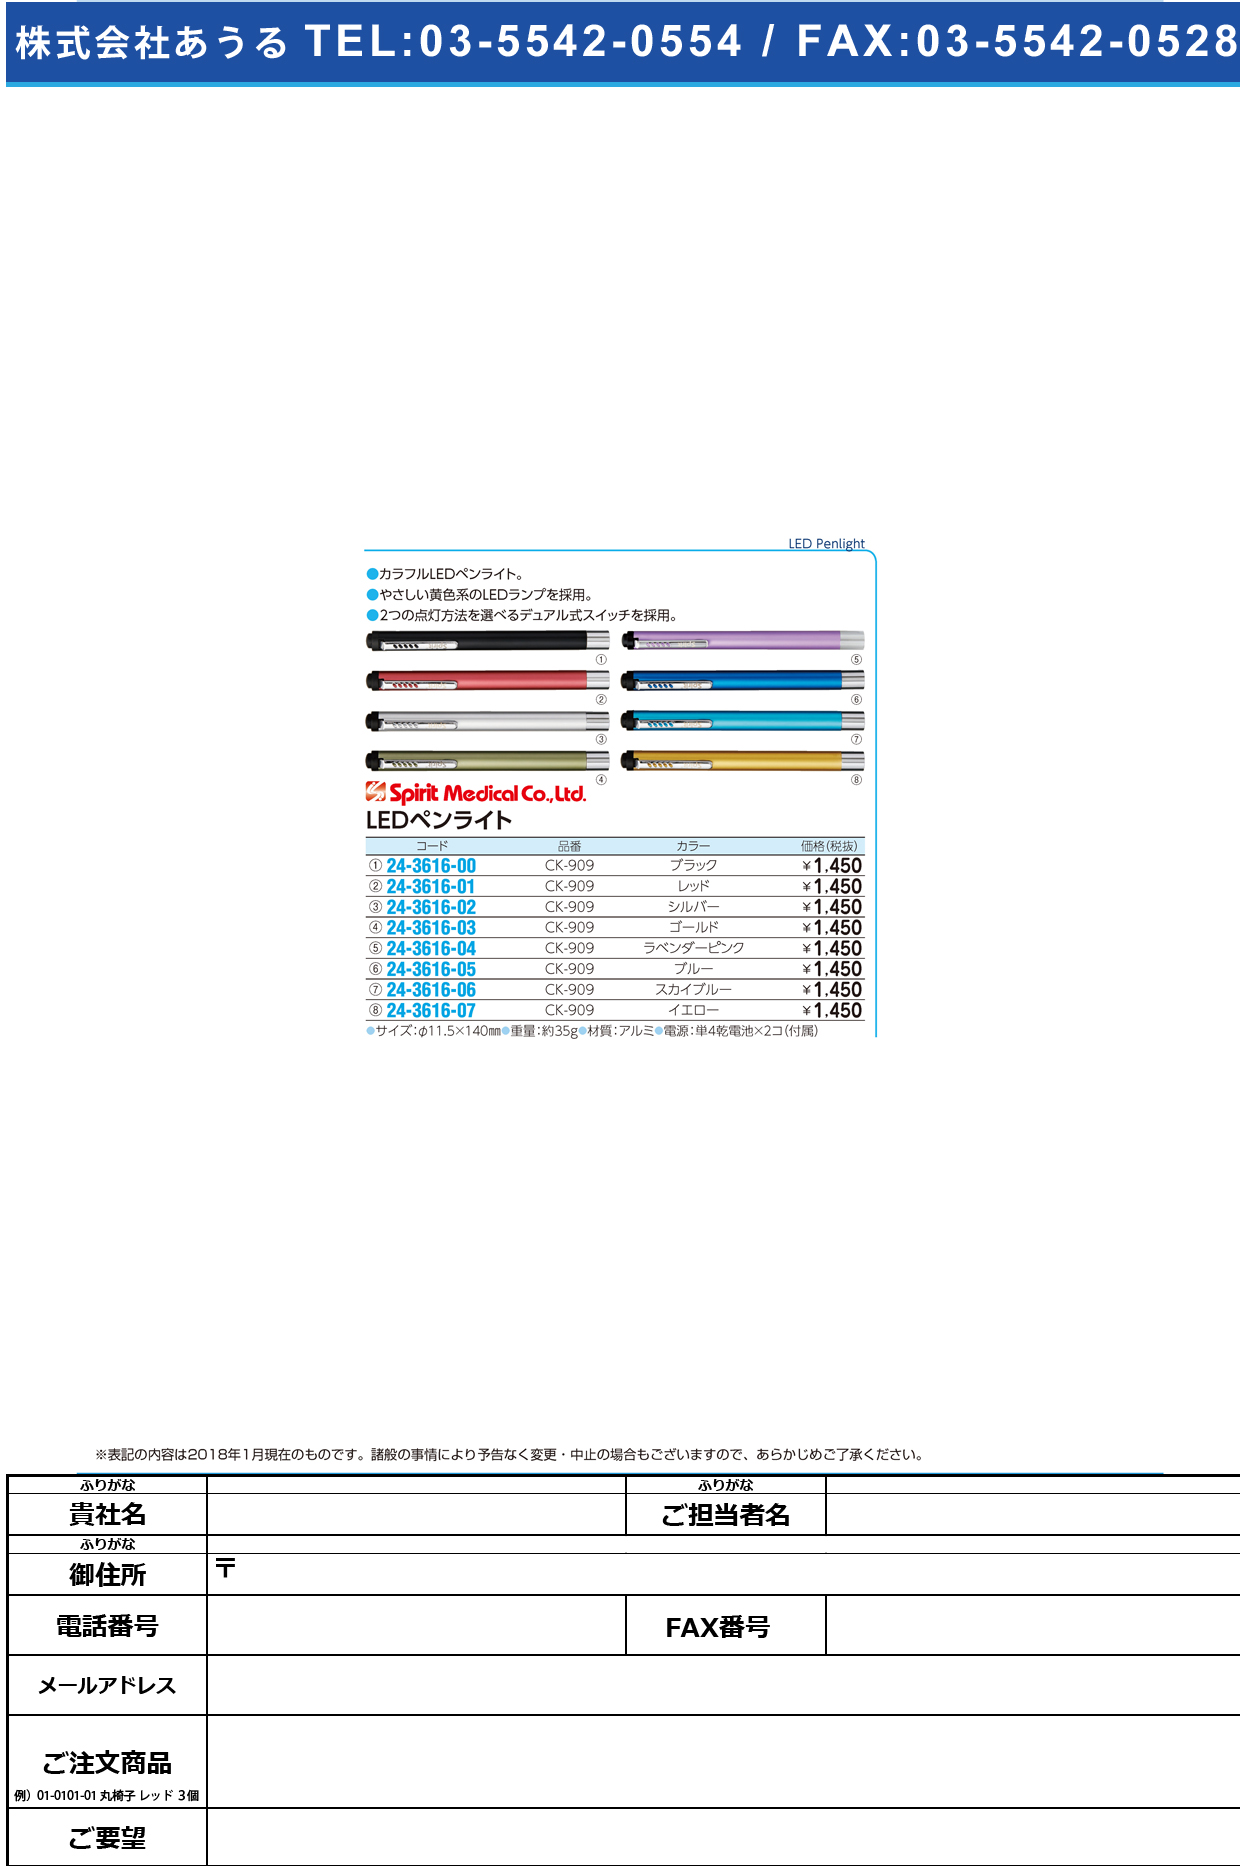 (24-3616-03)ＳｐｉｒｉｔＬＥＤペンライト CK-909(ｺﾞｰﾙﾄﾞ) SPIRITLEDﾍﾟﾝﾗｲﾄ(スピリット・メディカル社)【1台単位】【2019年カタログ商品】